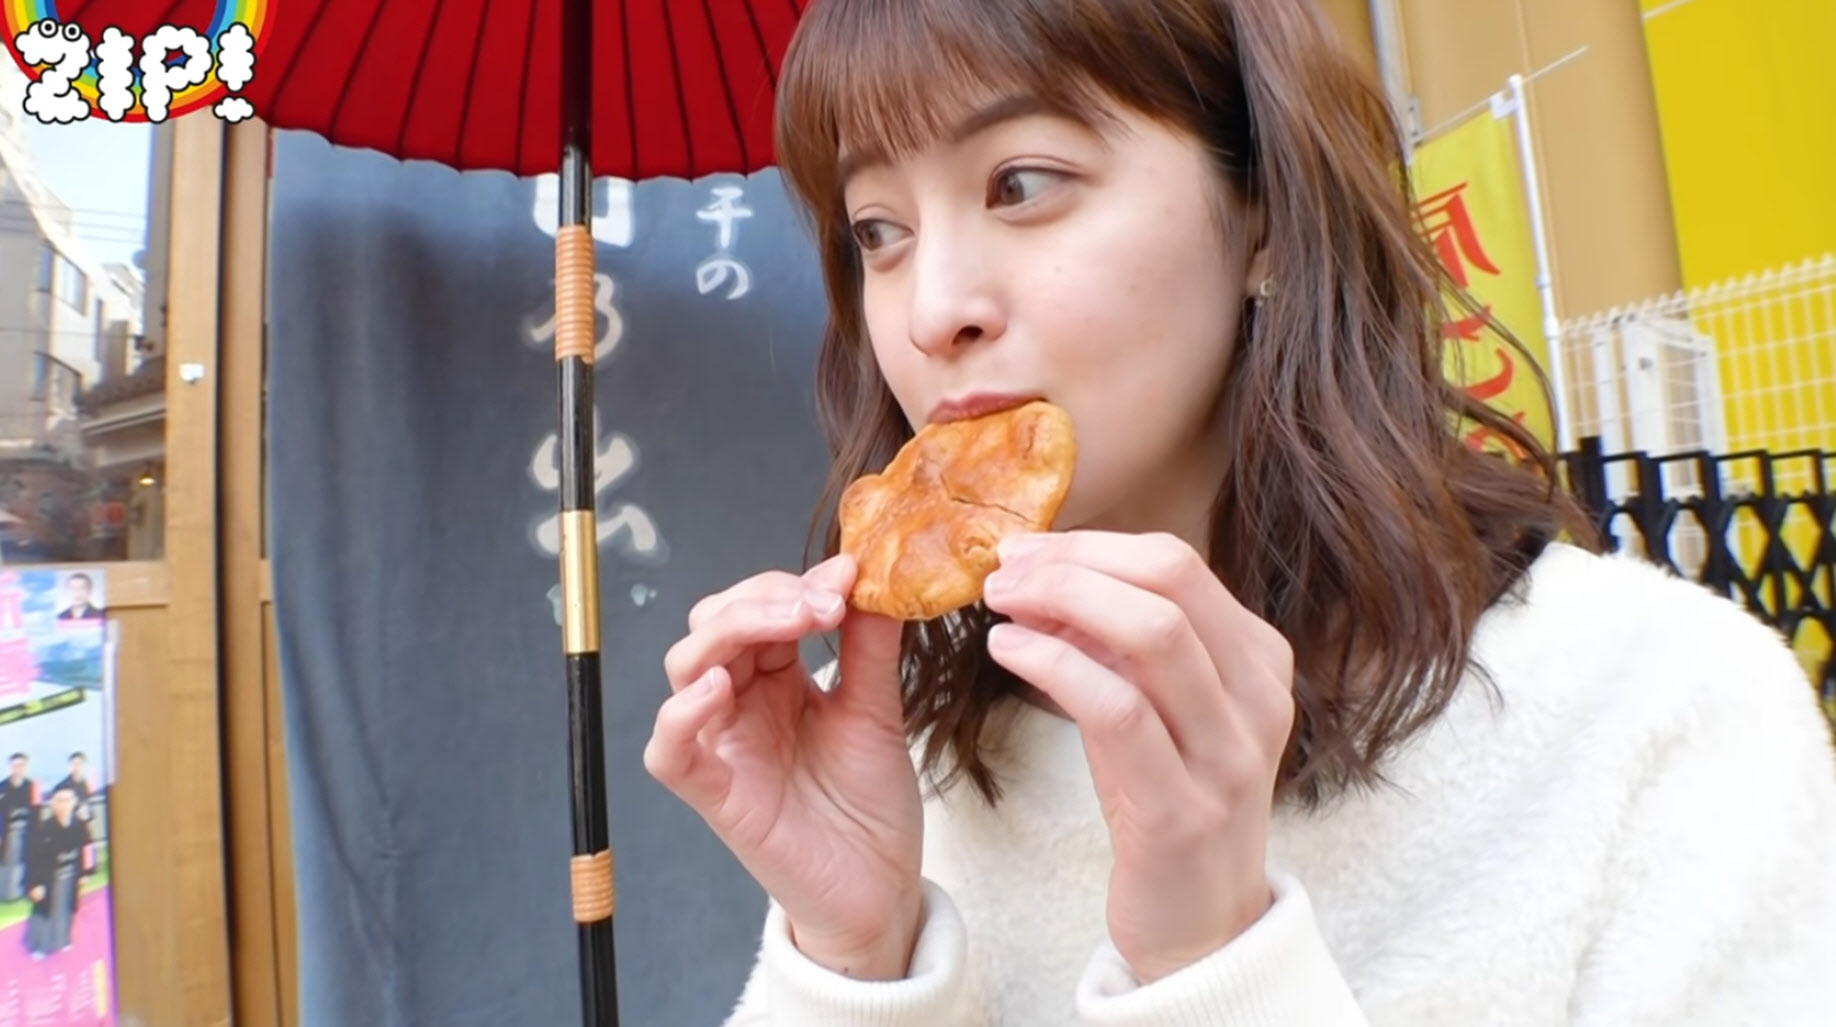 Senbei-Eating-Report-by-Arisa-Ushiro-後呂有紗-NTV-ZIP-2018-09.jpg